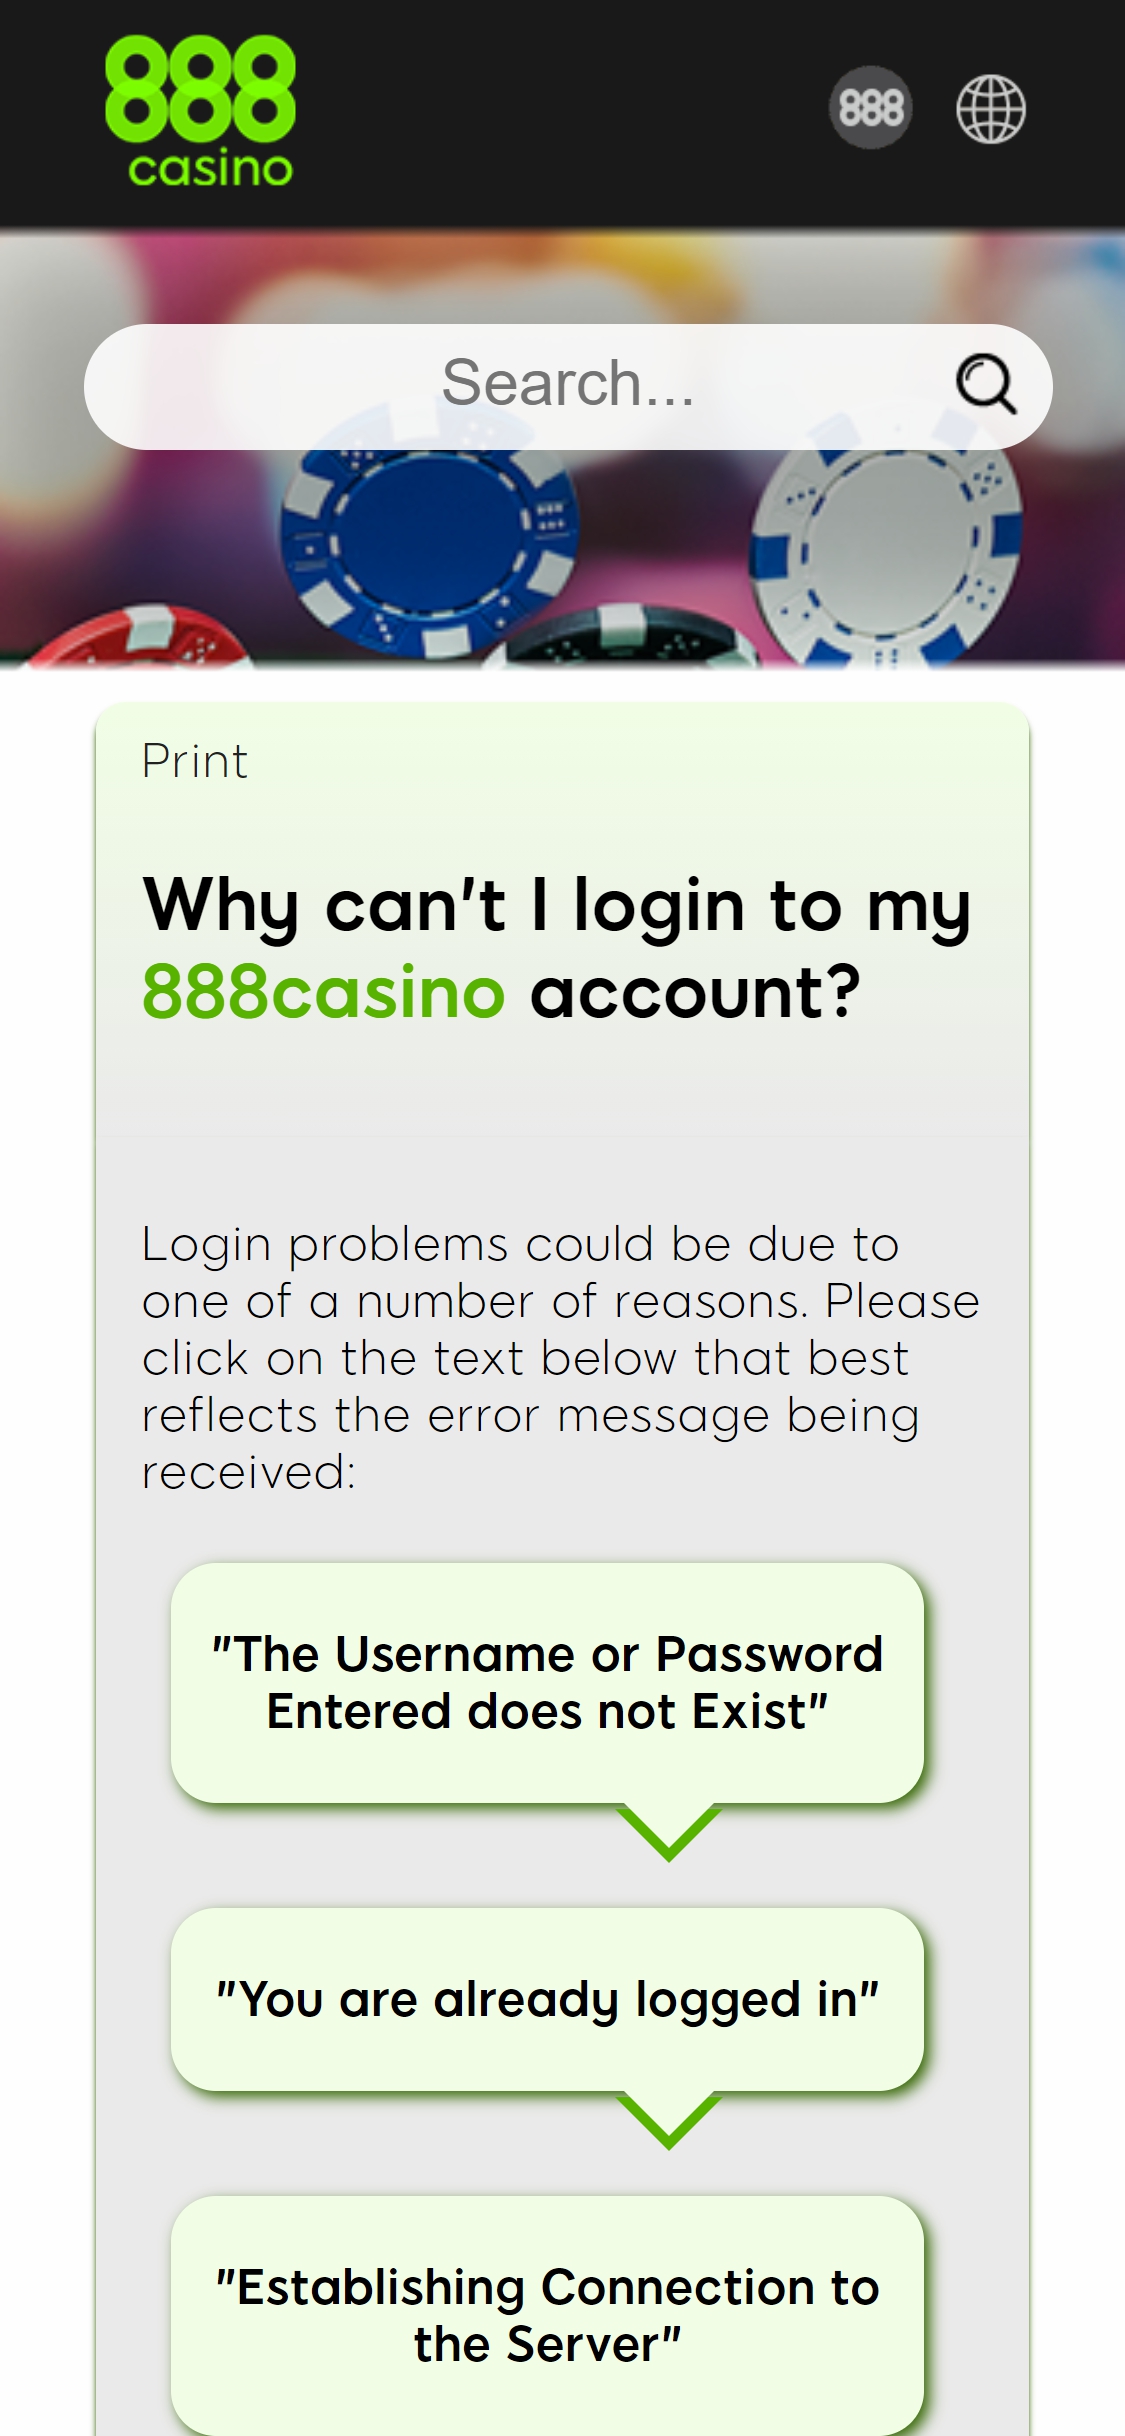 888.com Casino Mobile Support Review